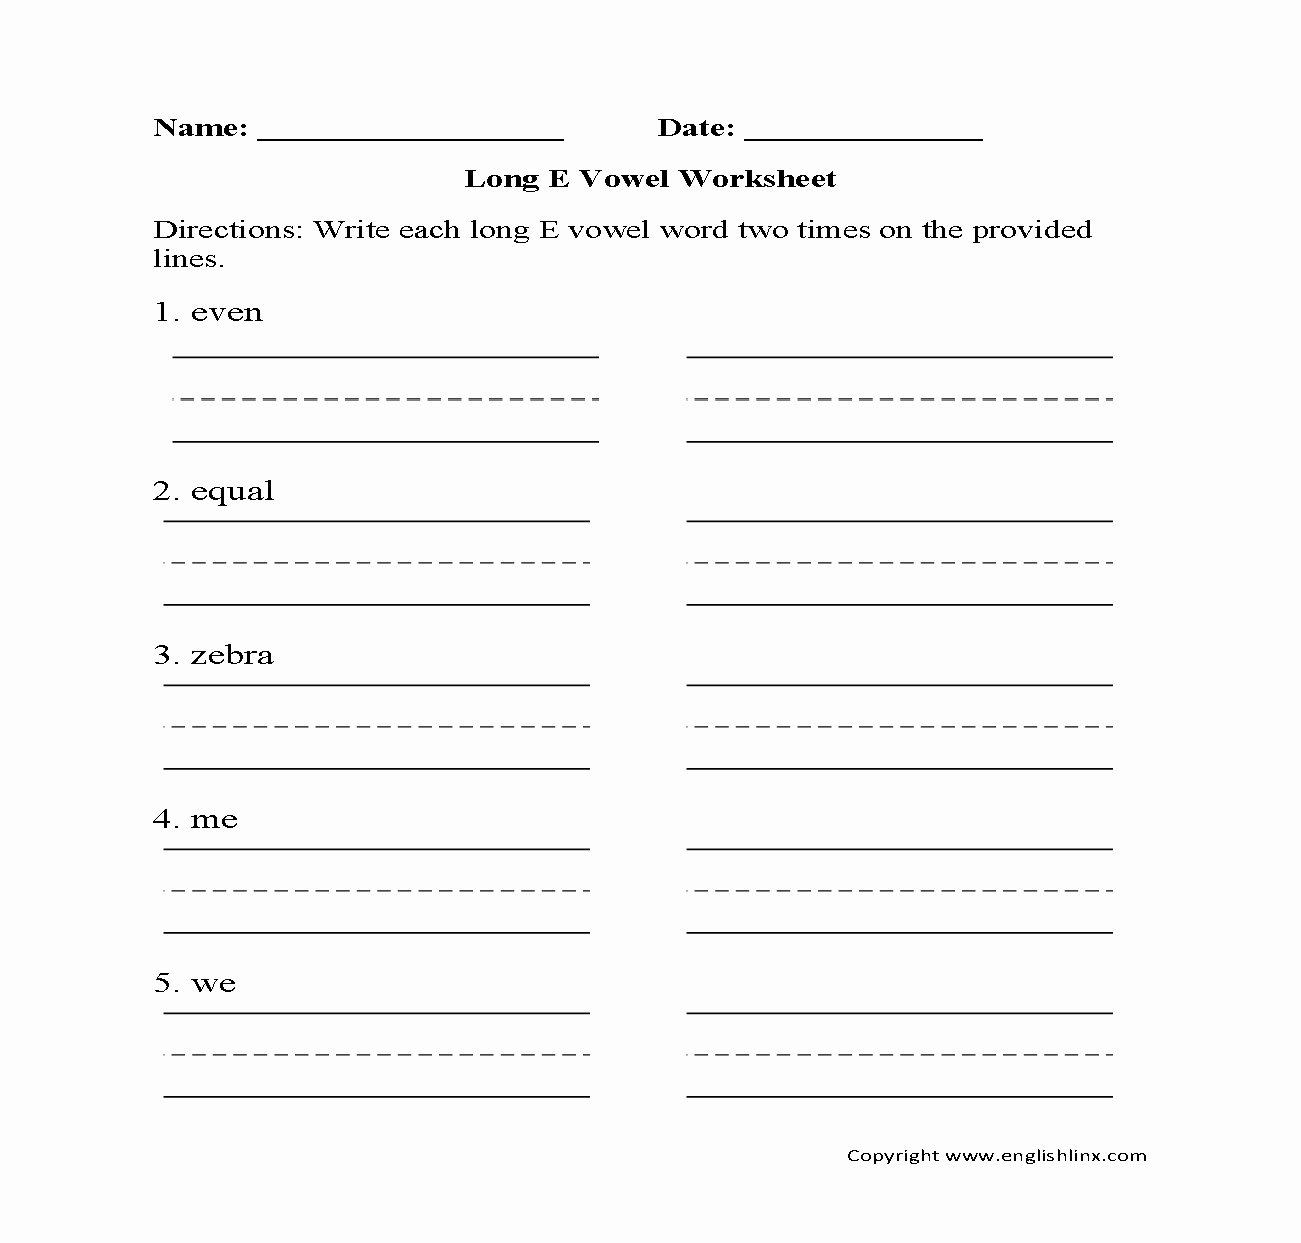 Short and Long Vowels Worksheet Awesome Vowel Worksheets